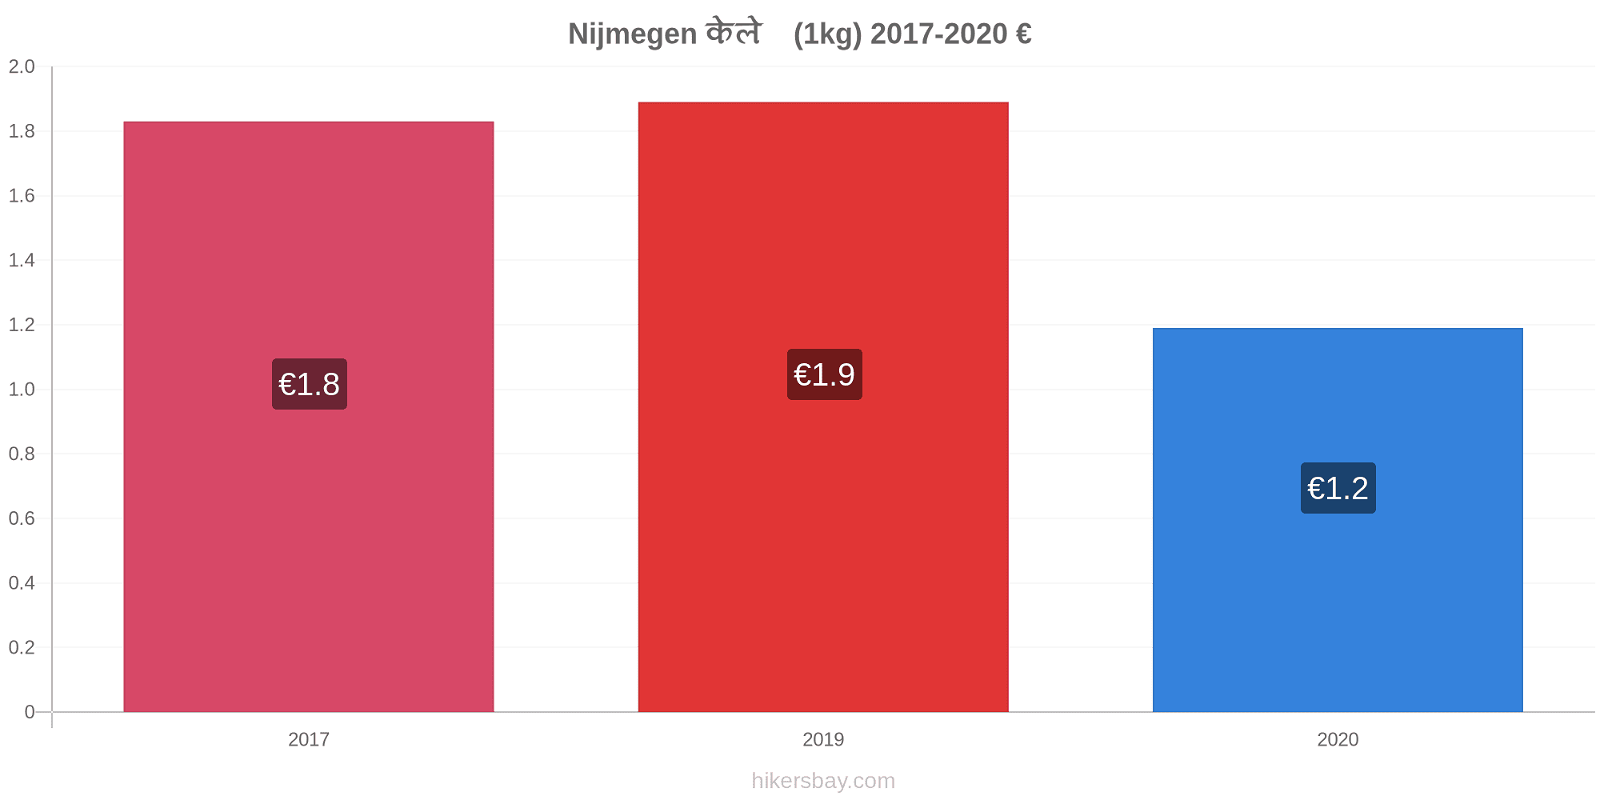 Nijmegen मूल्य परिवर्तन केले (1kg) hikersbay.com